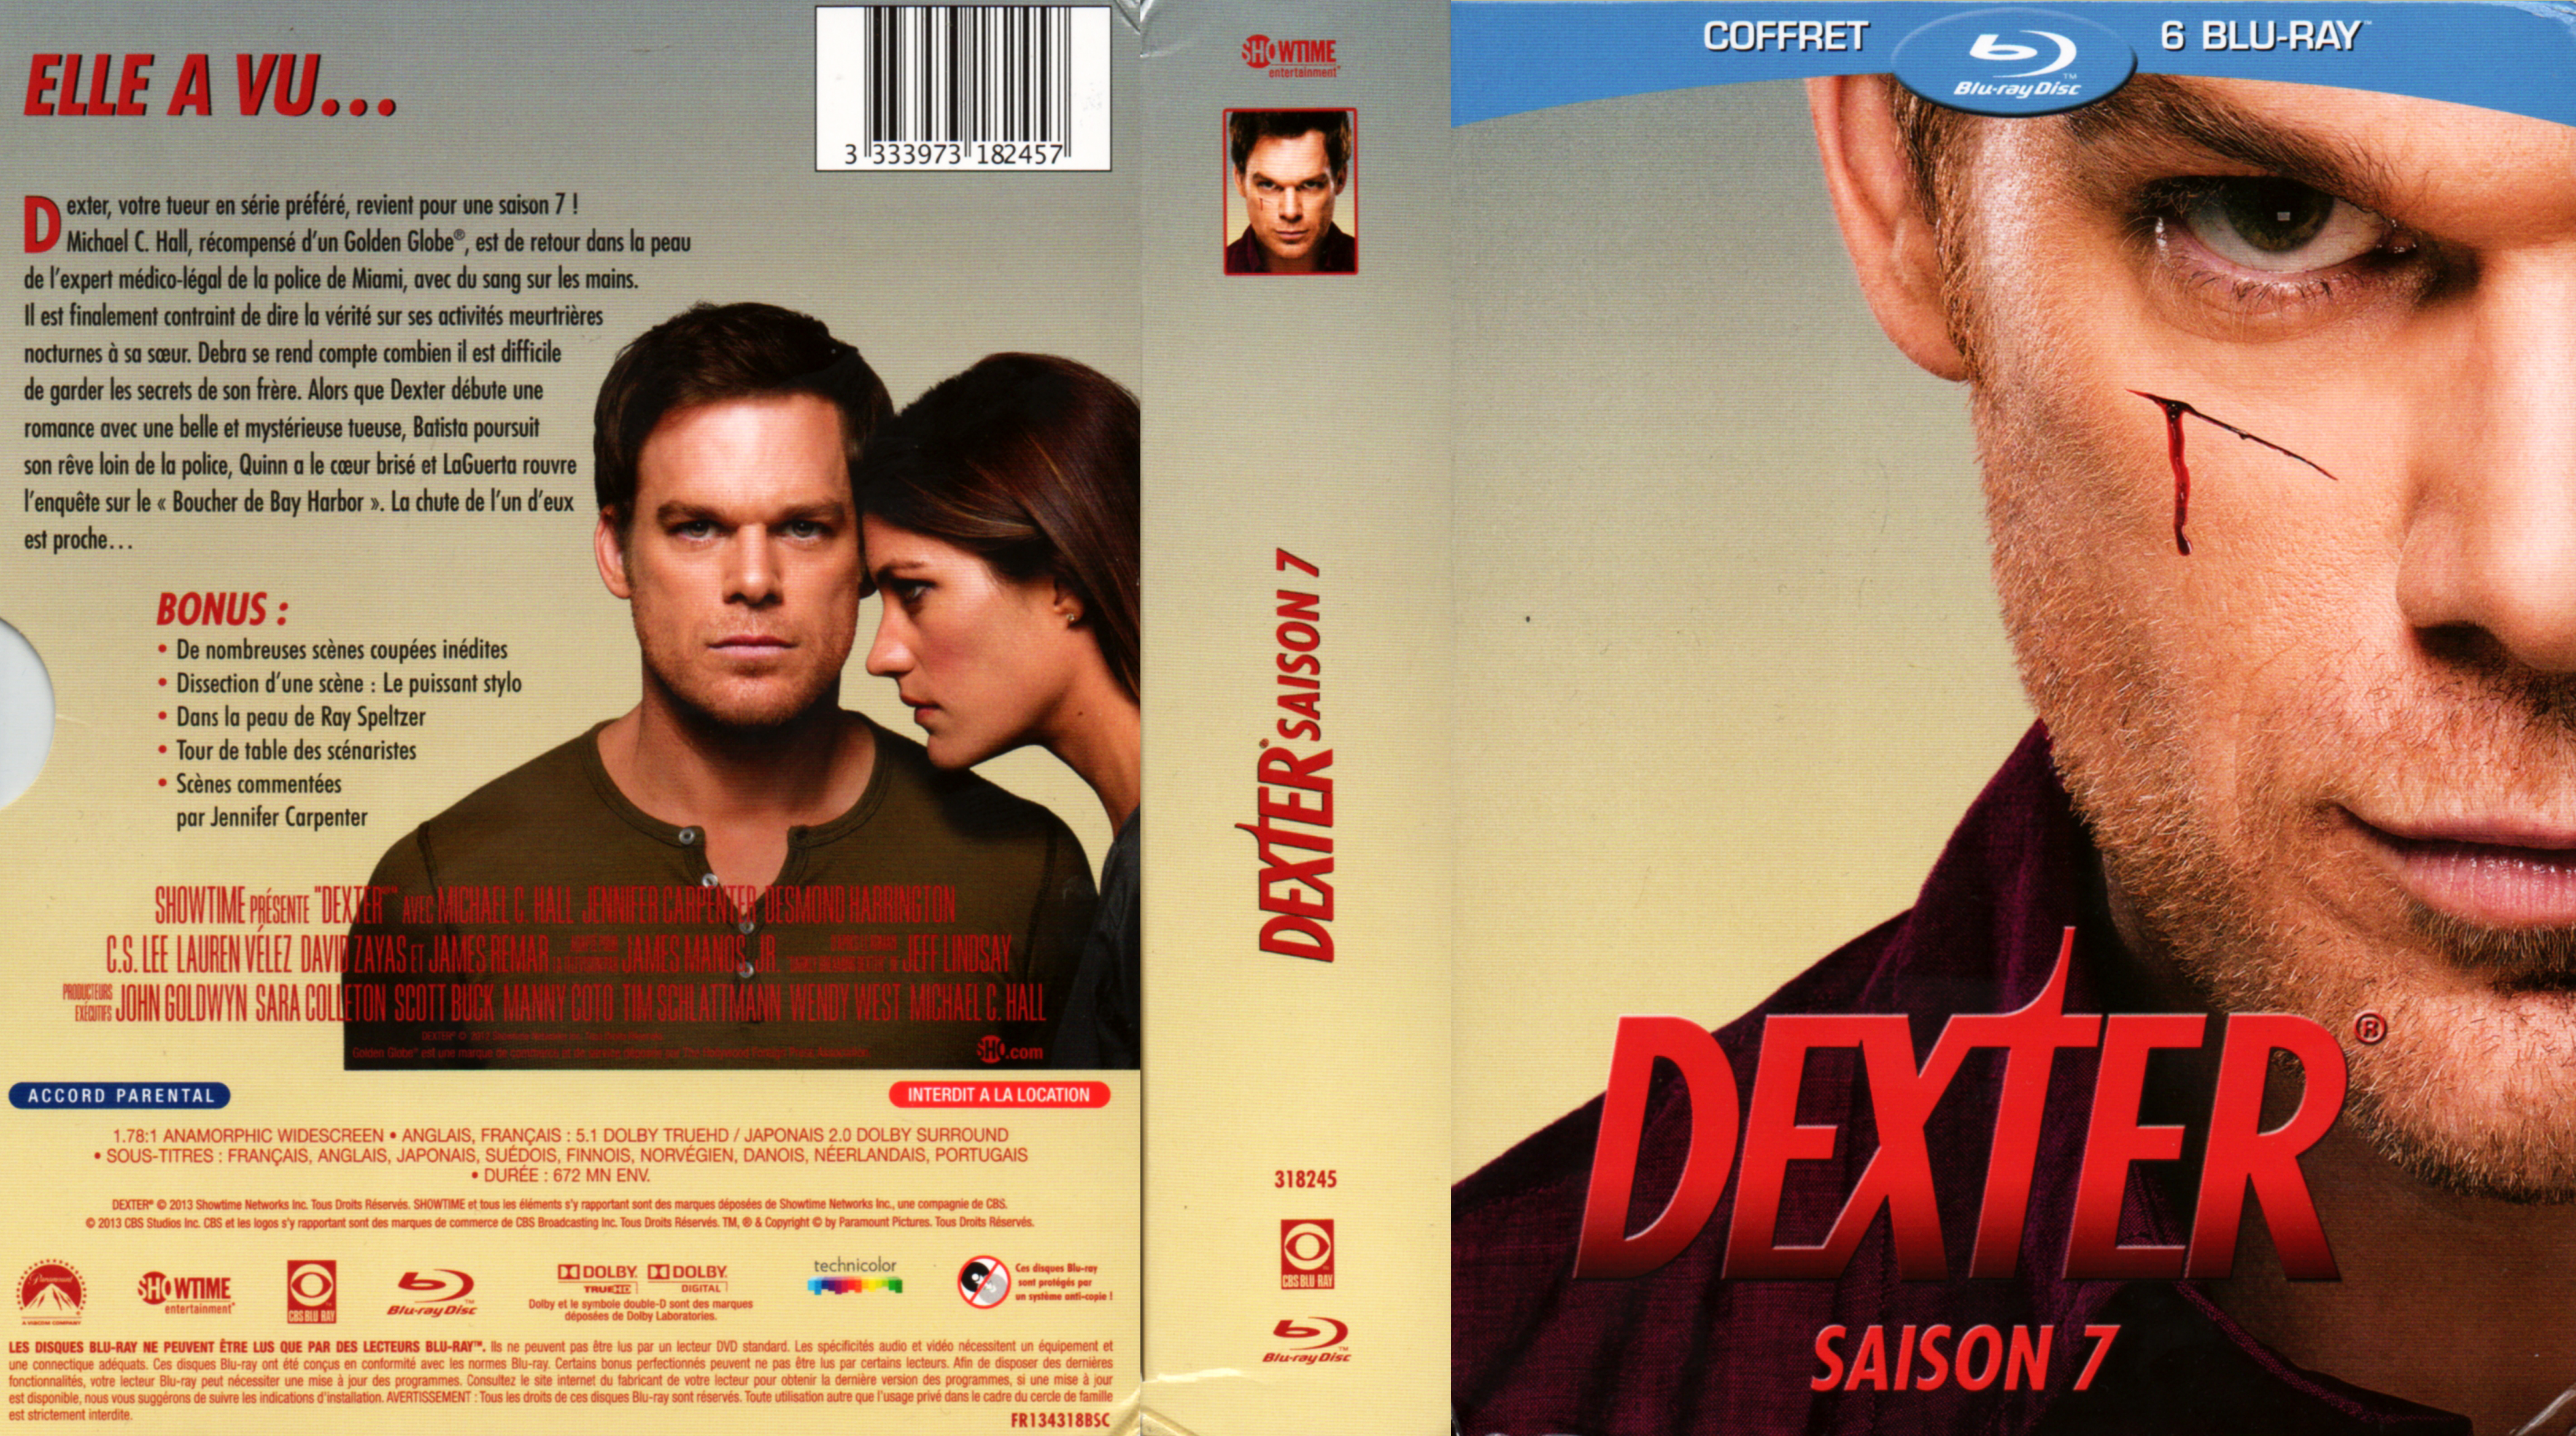 Jaquette DVD Dexter saison 7 COFFRET (BLU-RAY)